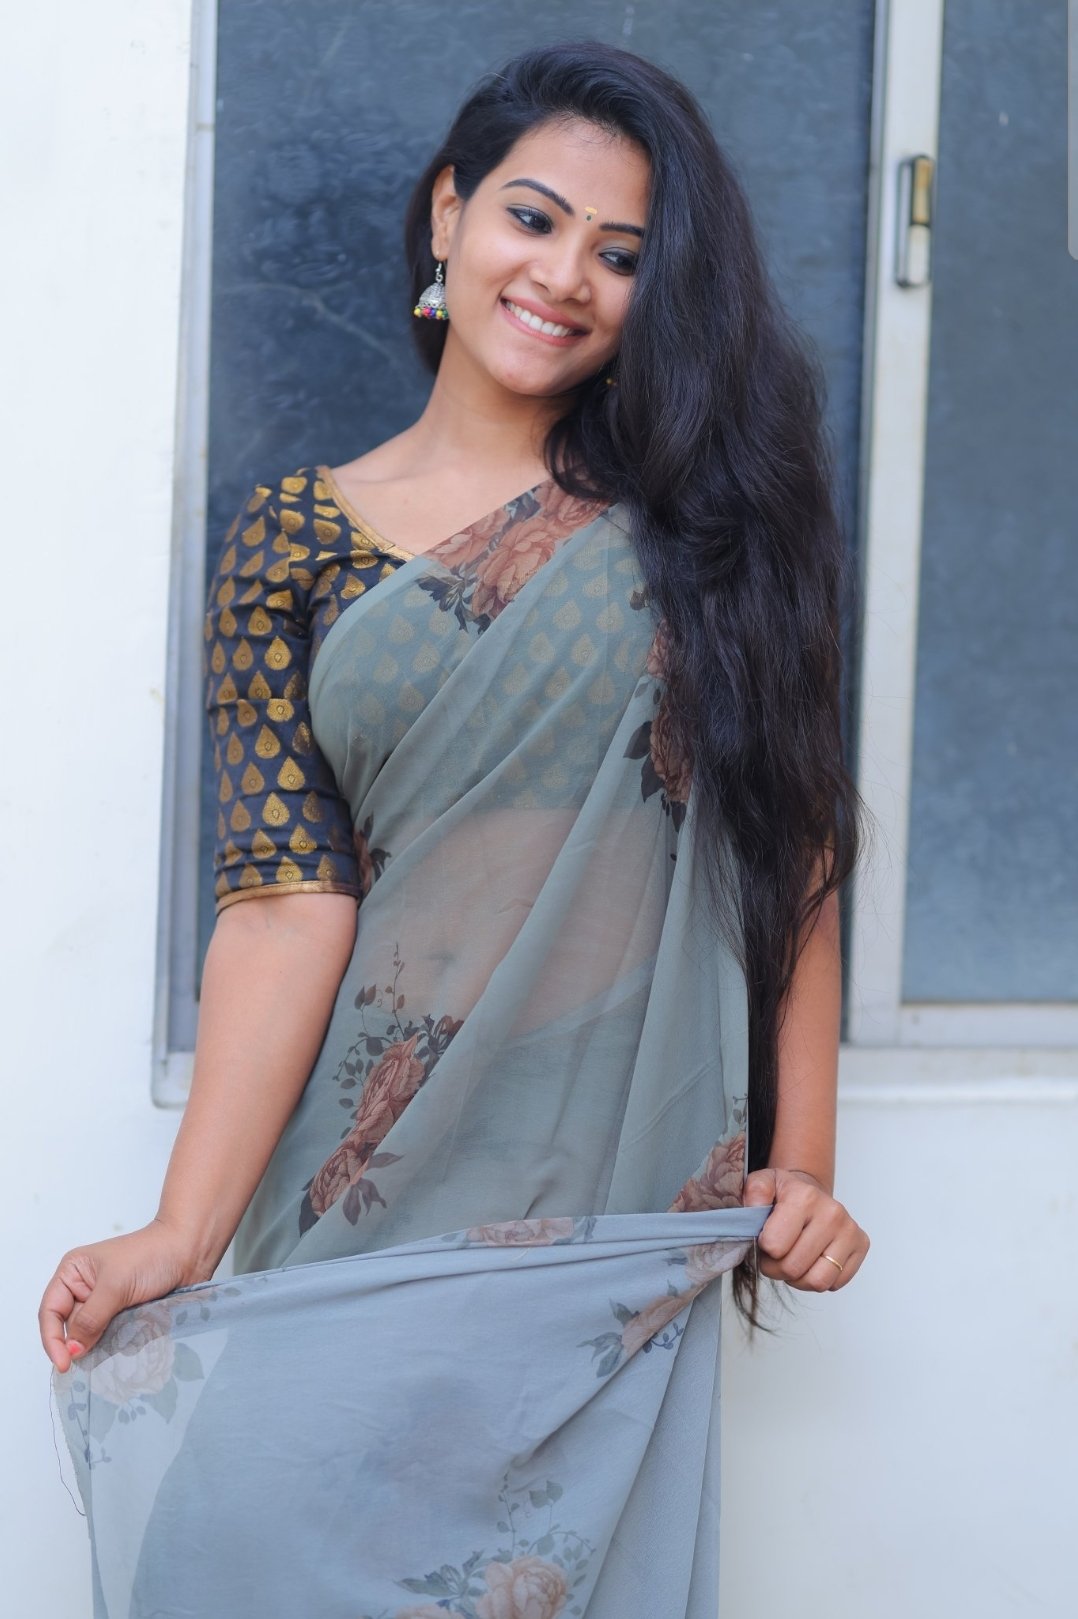 Actress Stills on X: Actress cute in transparent saree #actressstill  #actress #sareedraping #sareegirl  / X